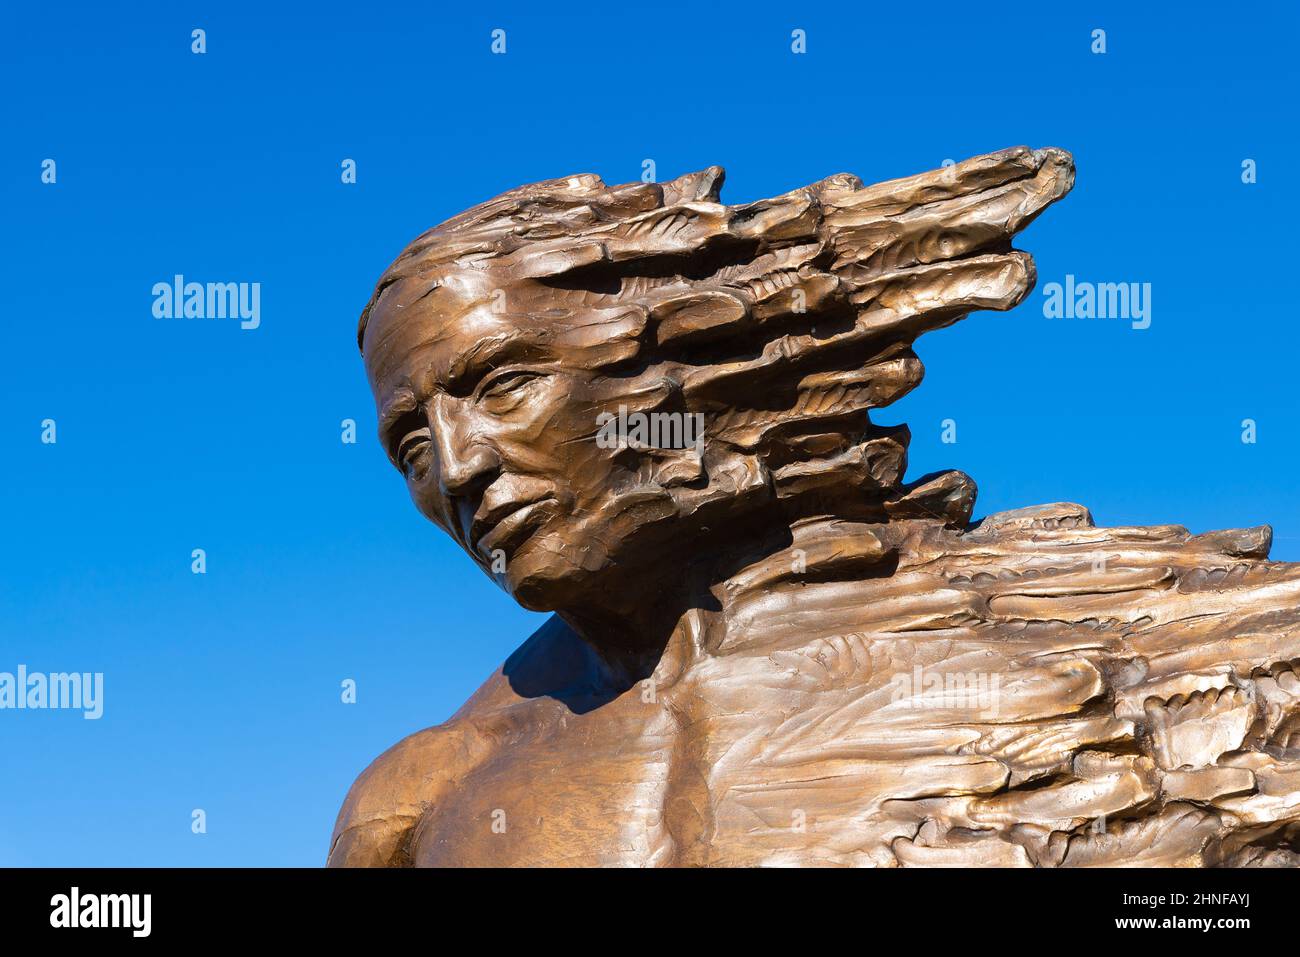 Rock Falls, Illinois - Stati Uniti - 30th novembre 2021: Scultura 'il tempo passa' di David Zahn in Sculpture Park in una bella giornata di sole. Foto Stock